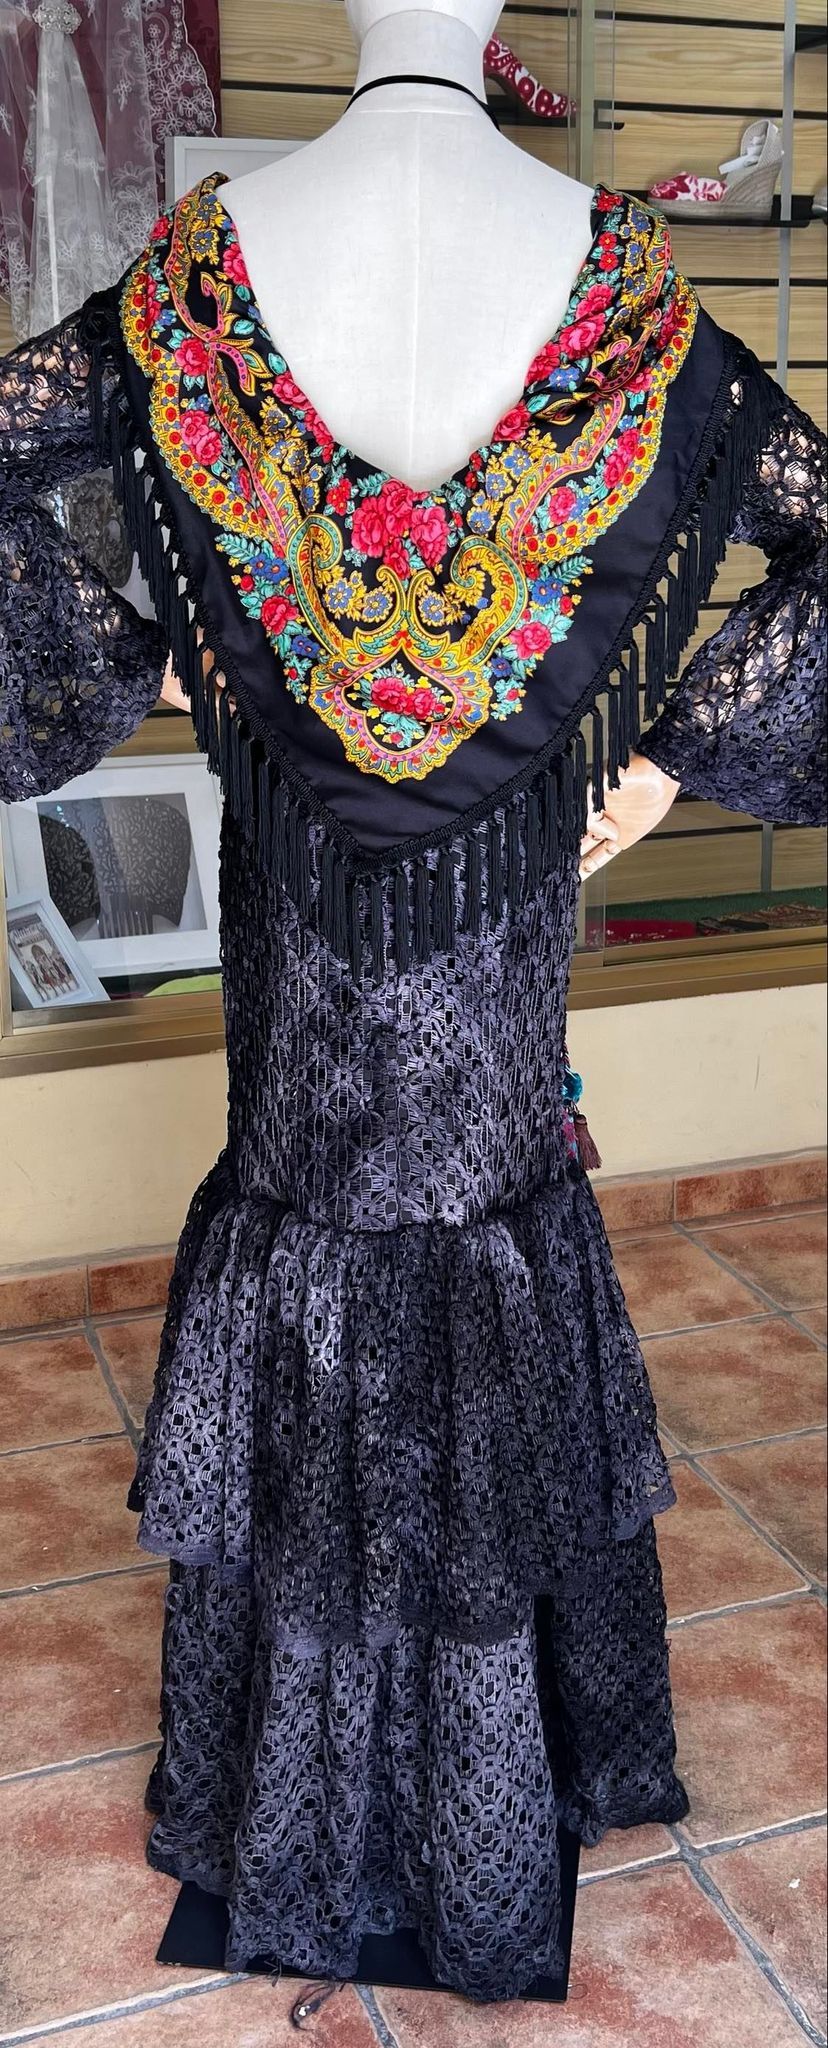 Flecos para trajes de flamenca y mantones, fabricantes nacionales